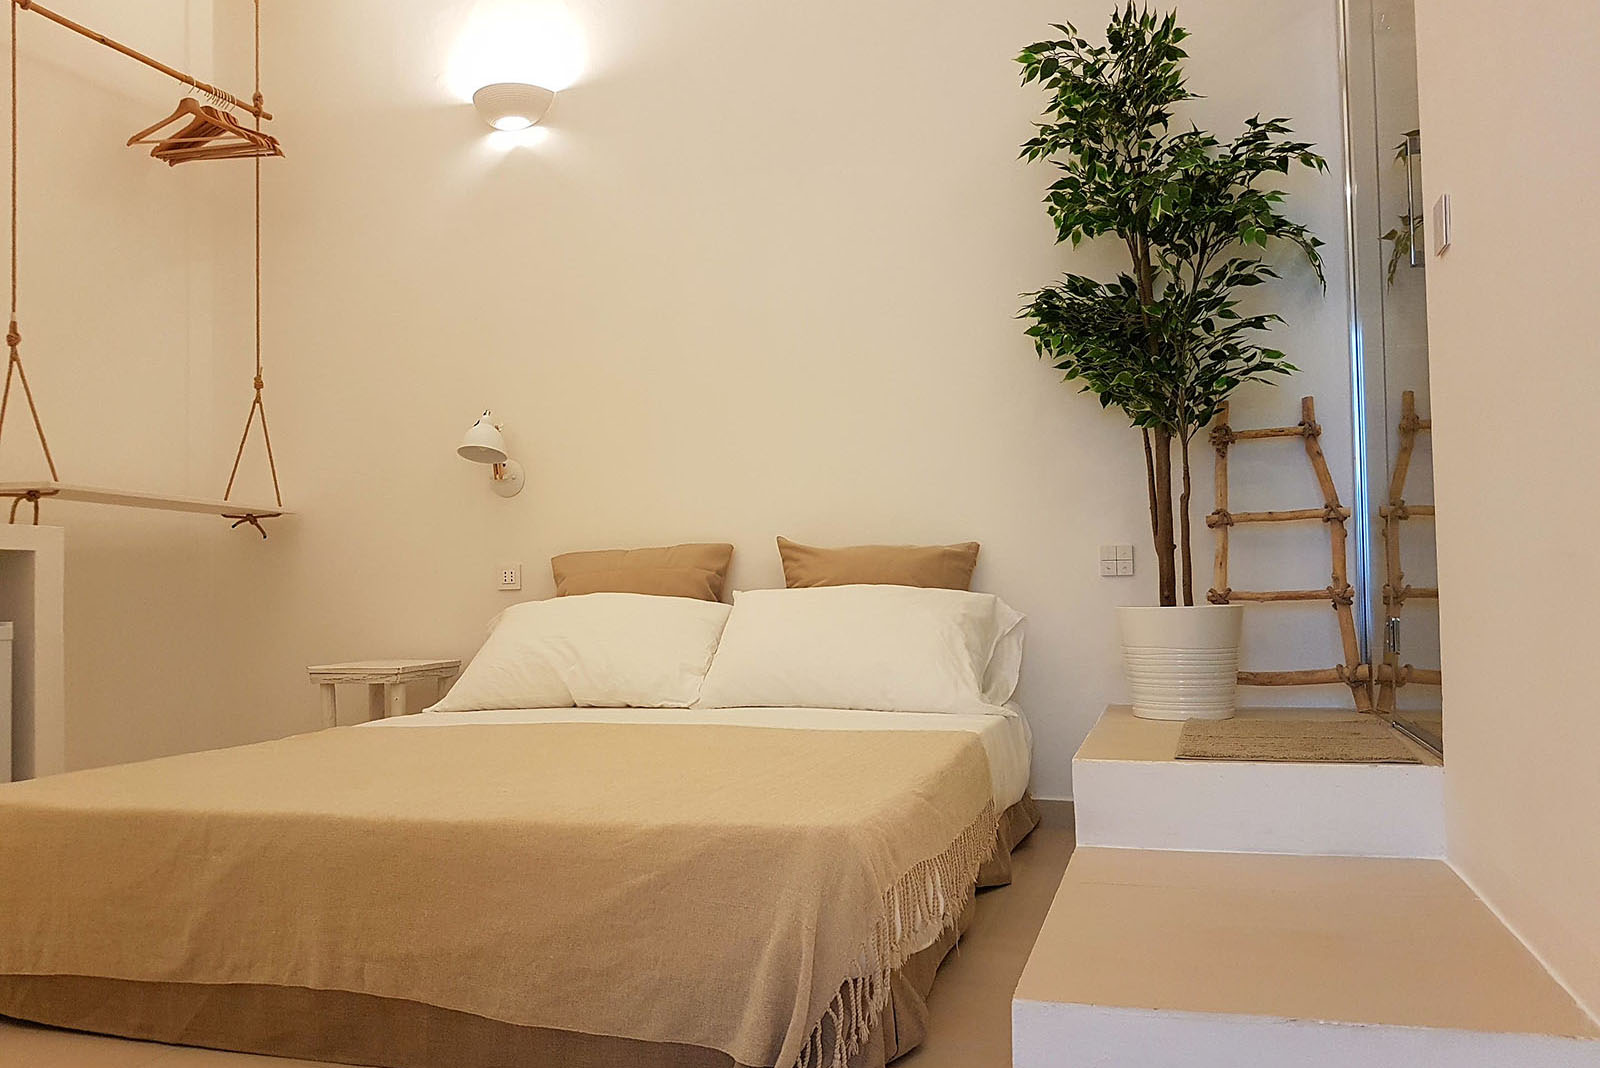 1 bed and breakfast agropoli progettazione architettonica domotica salerno break for two mare nest room 4-1 b&b